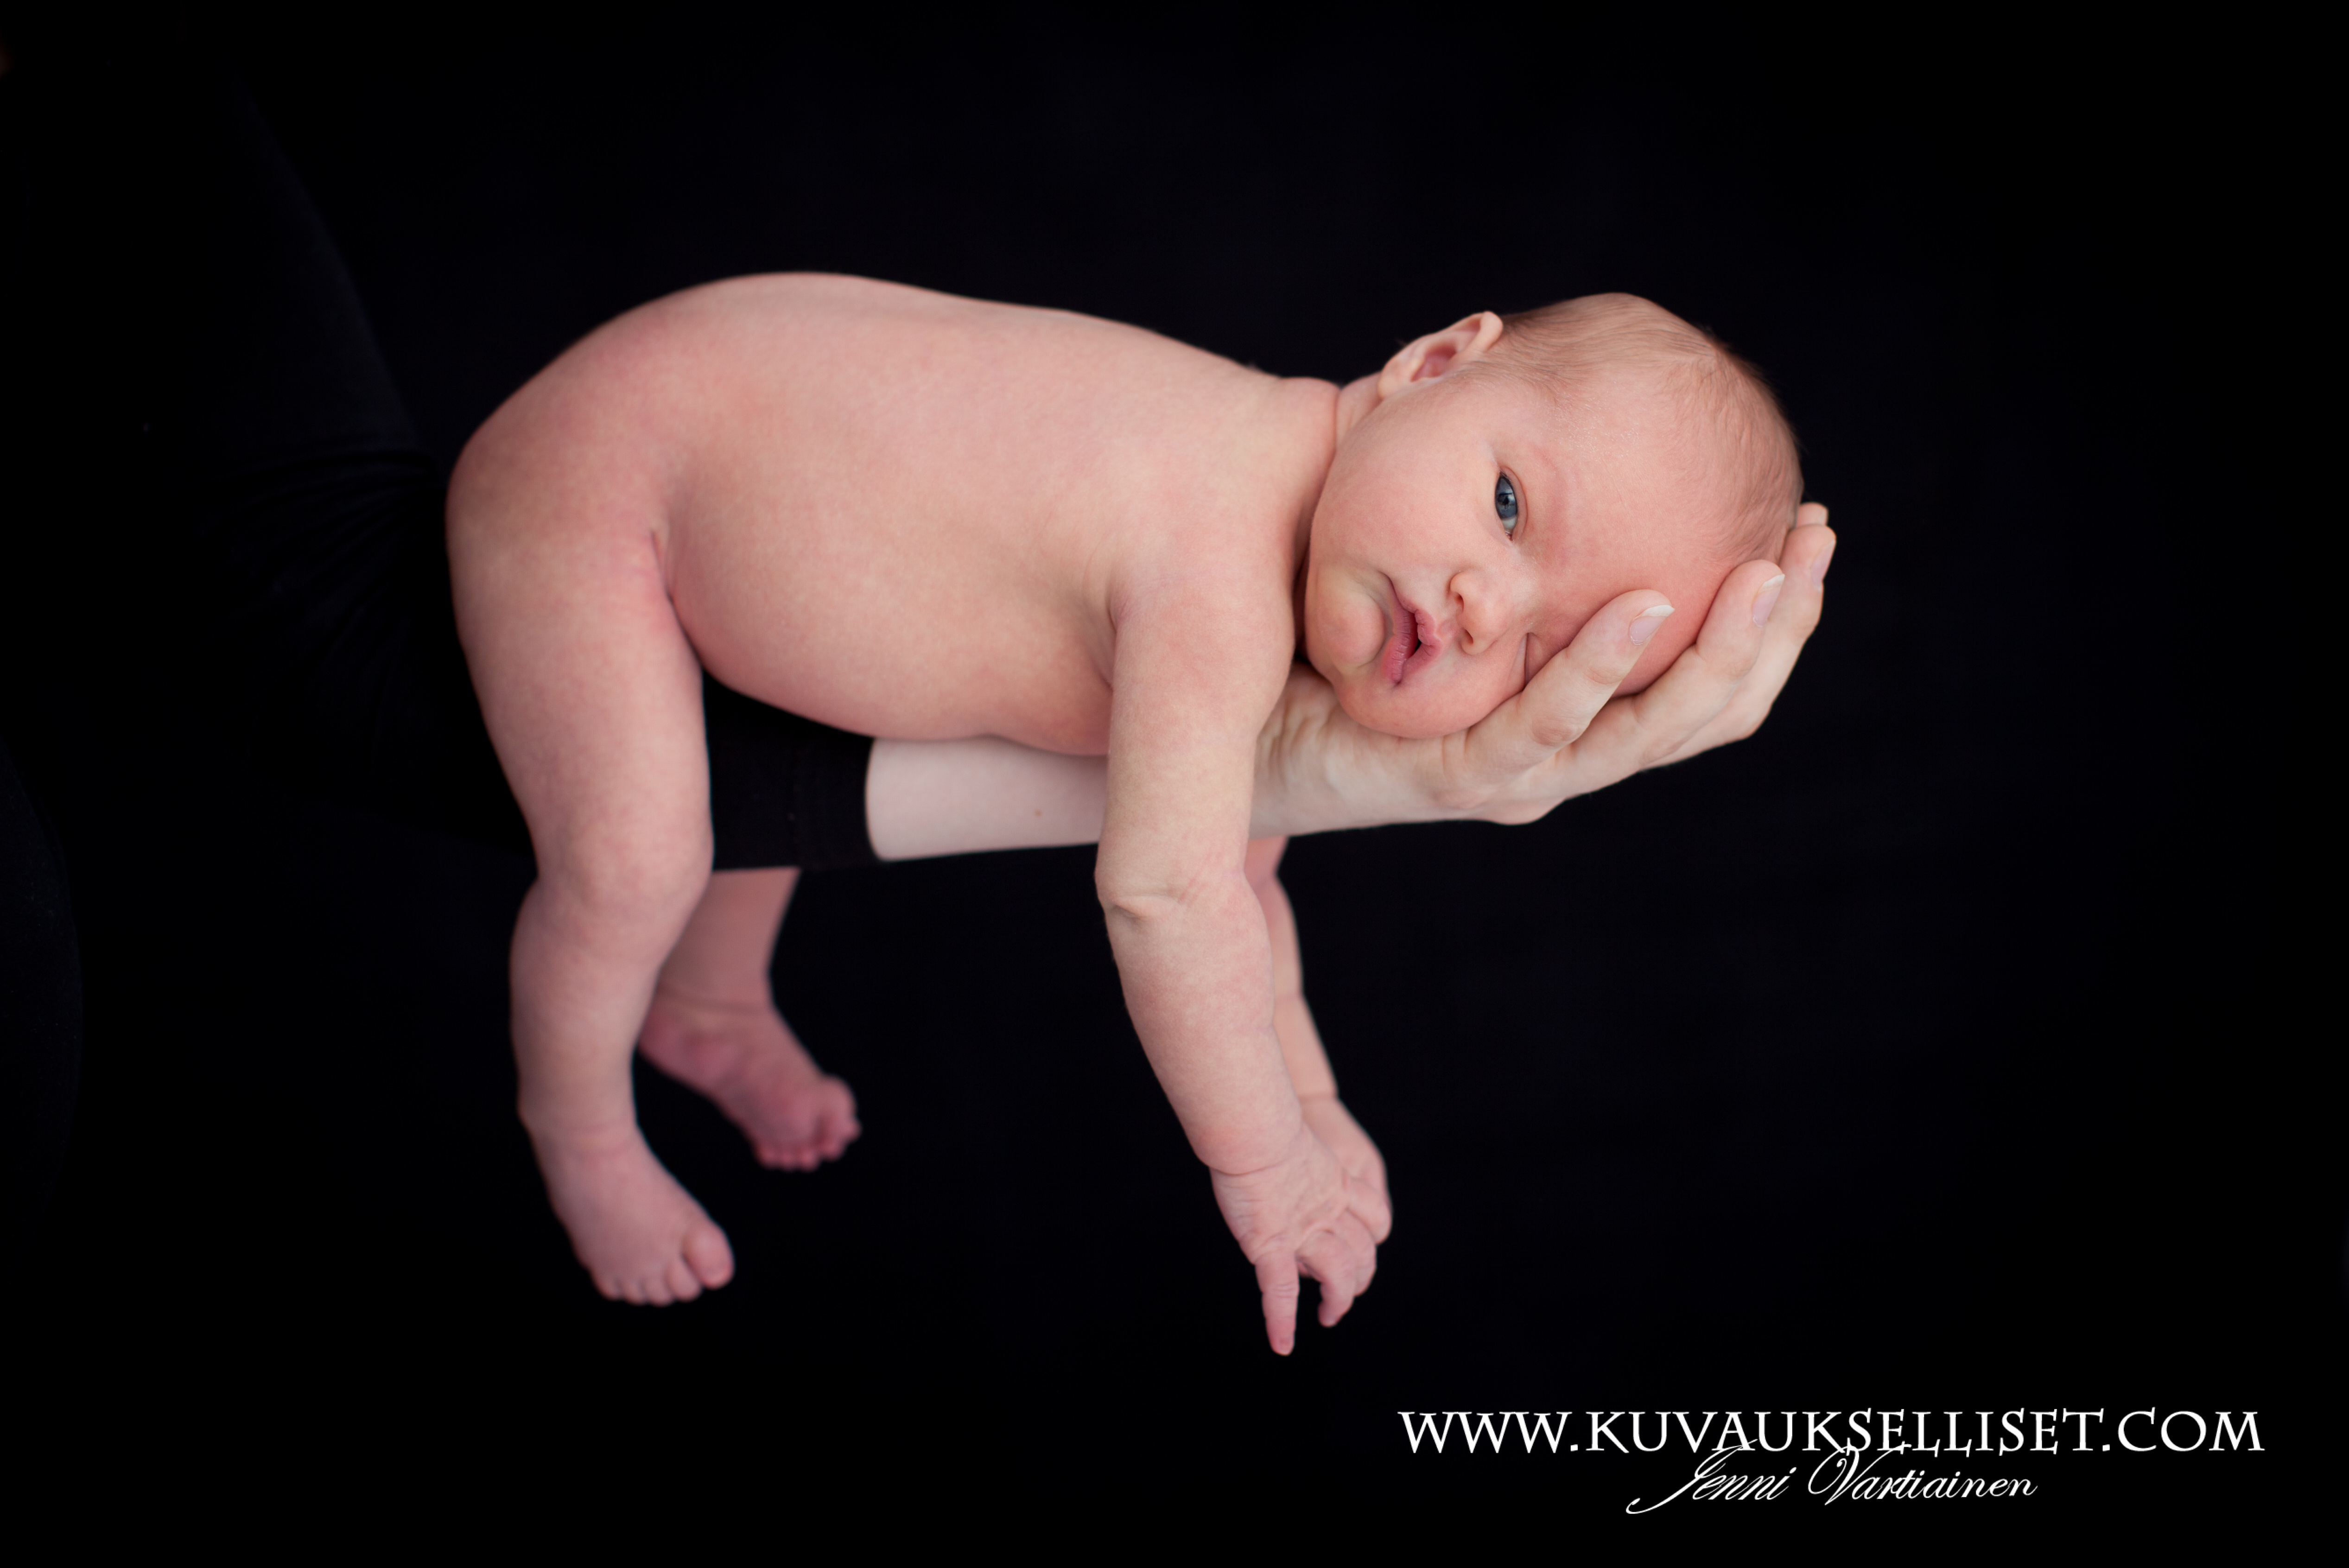 2014.4.8 vauvakuvaus vastasyntyneen kuvaus studiokuvaus 4